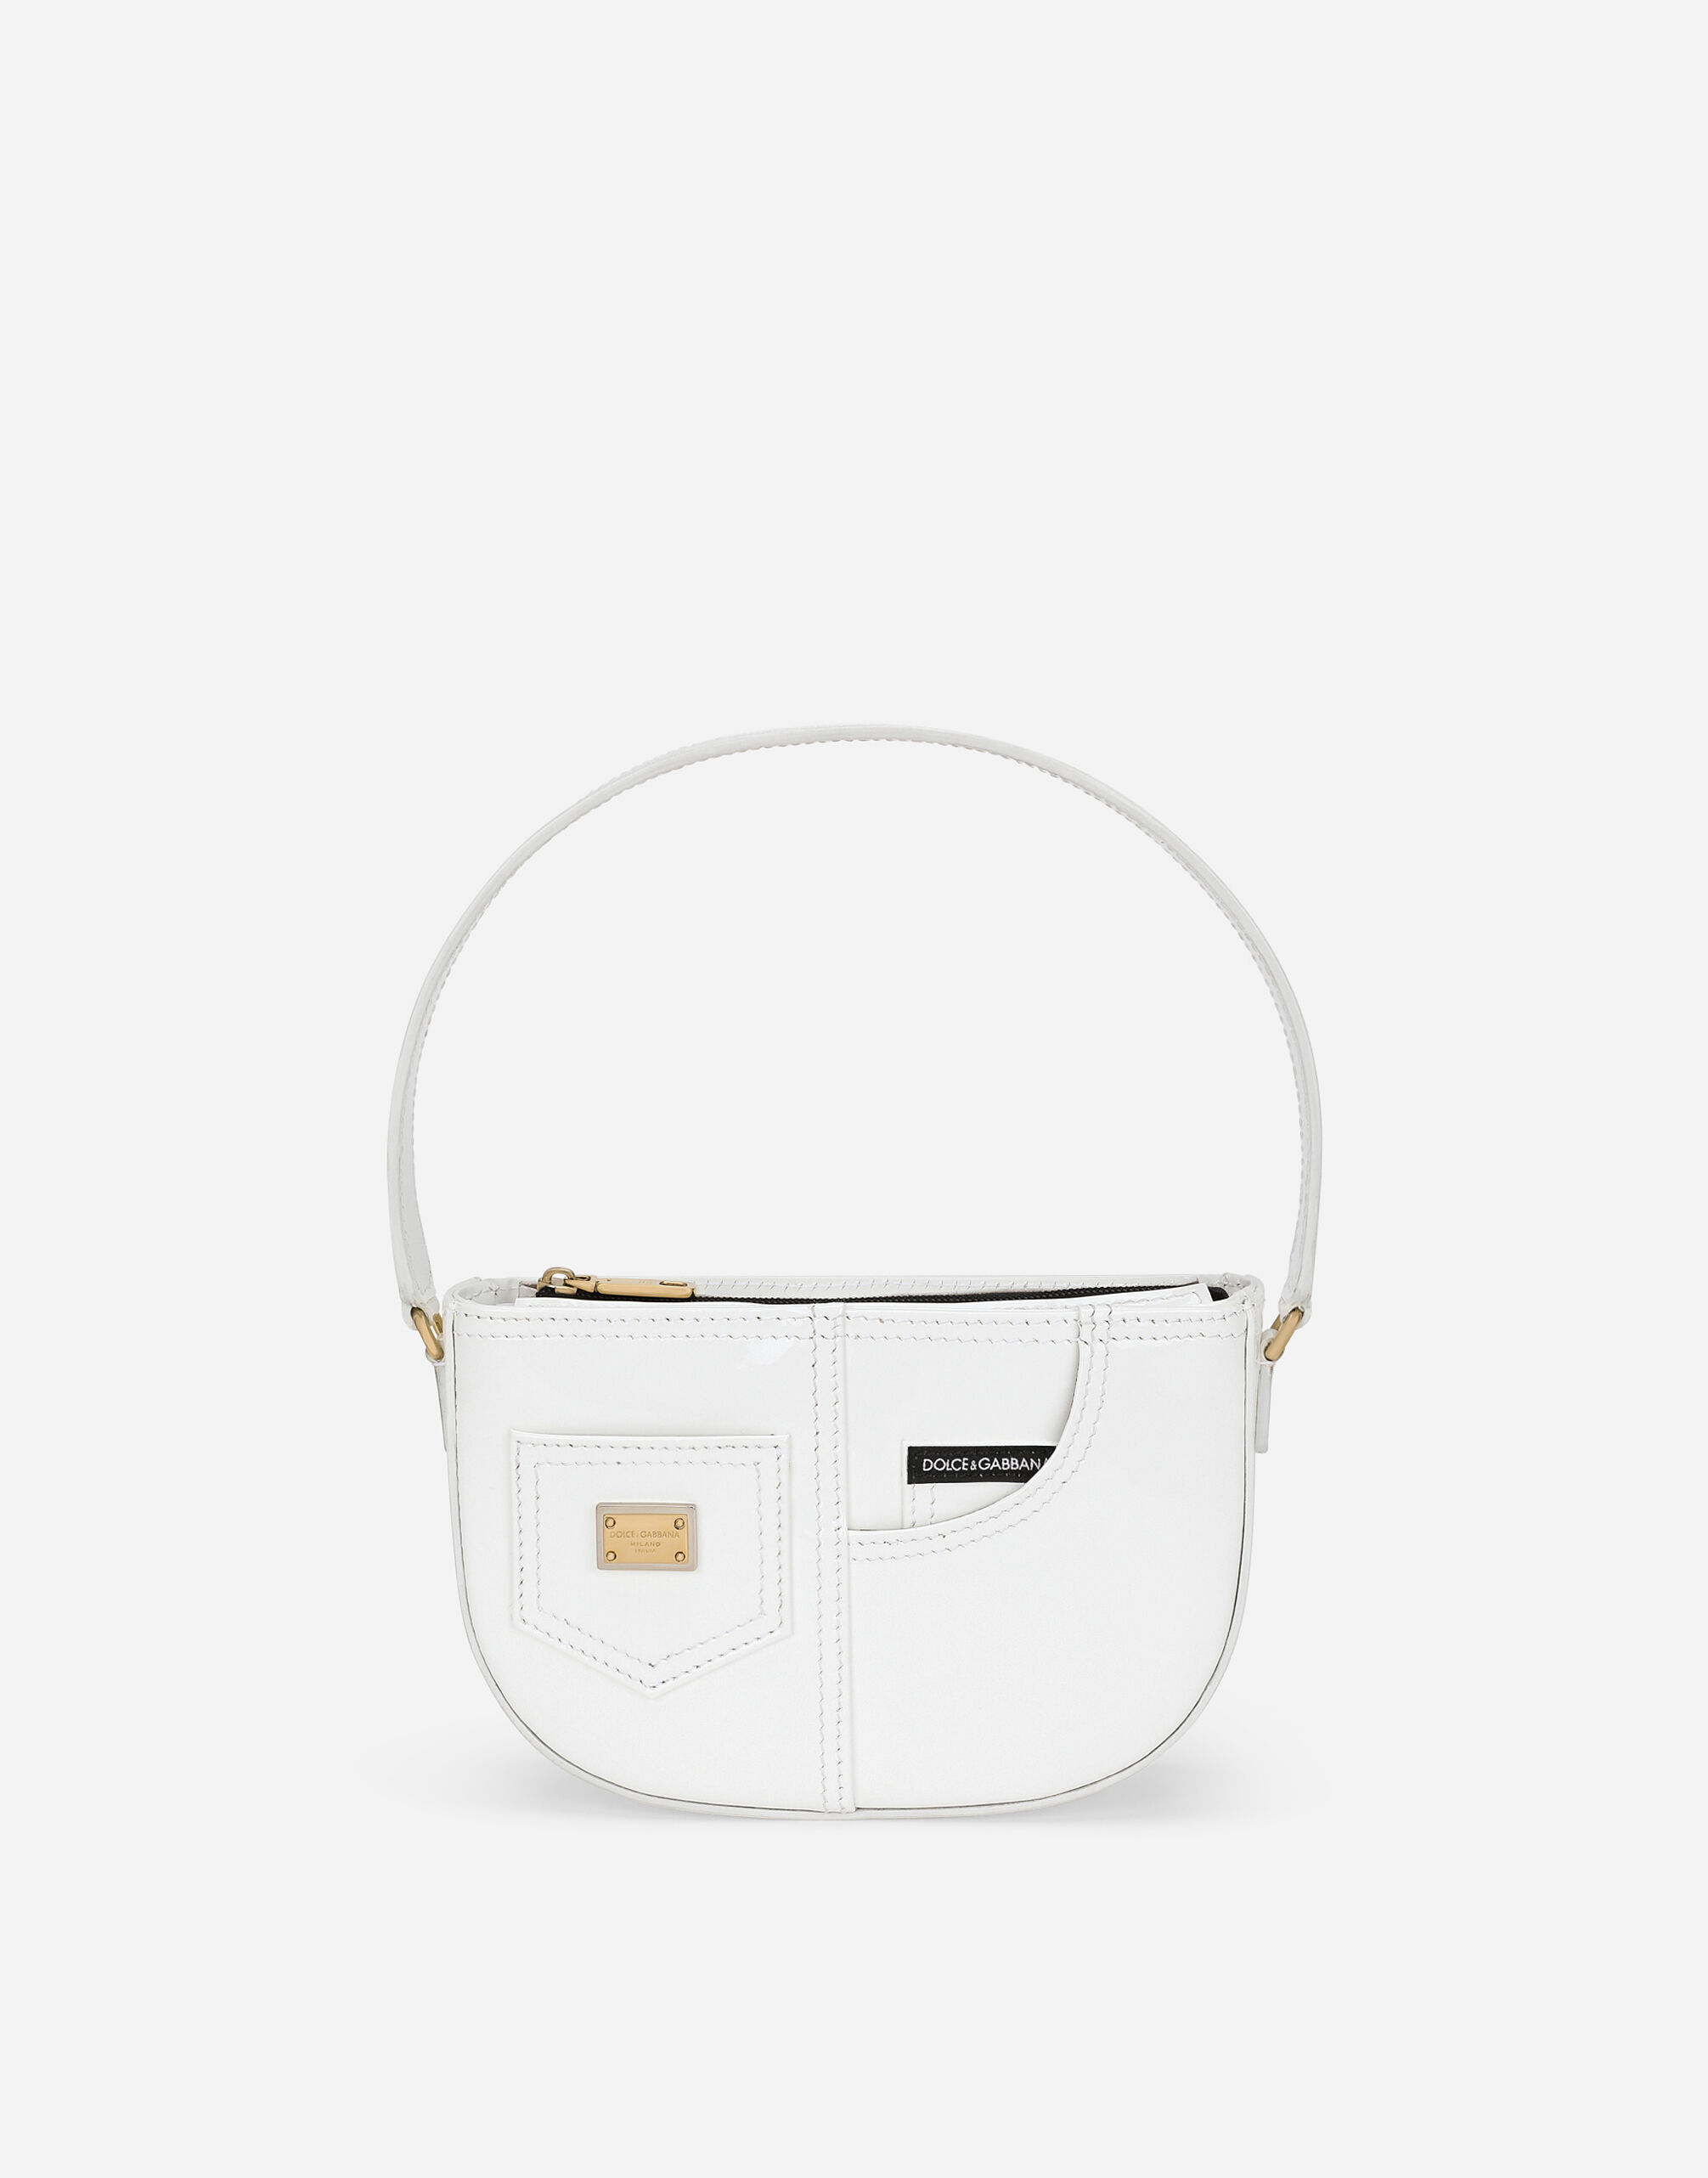 Dolce & Gabbana DG Girlie handbag White EB0003A1067